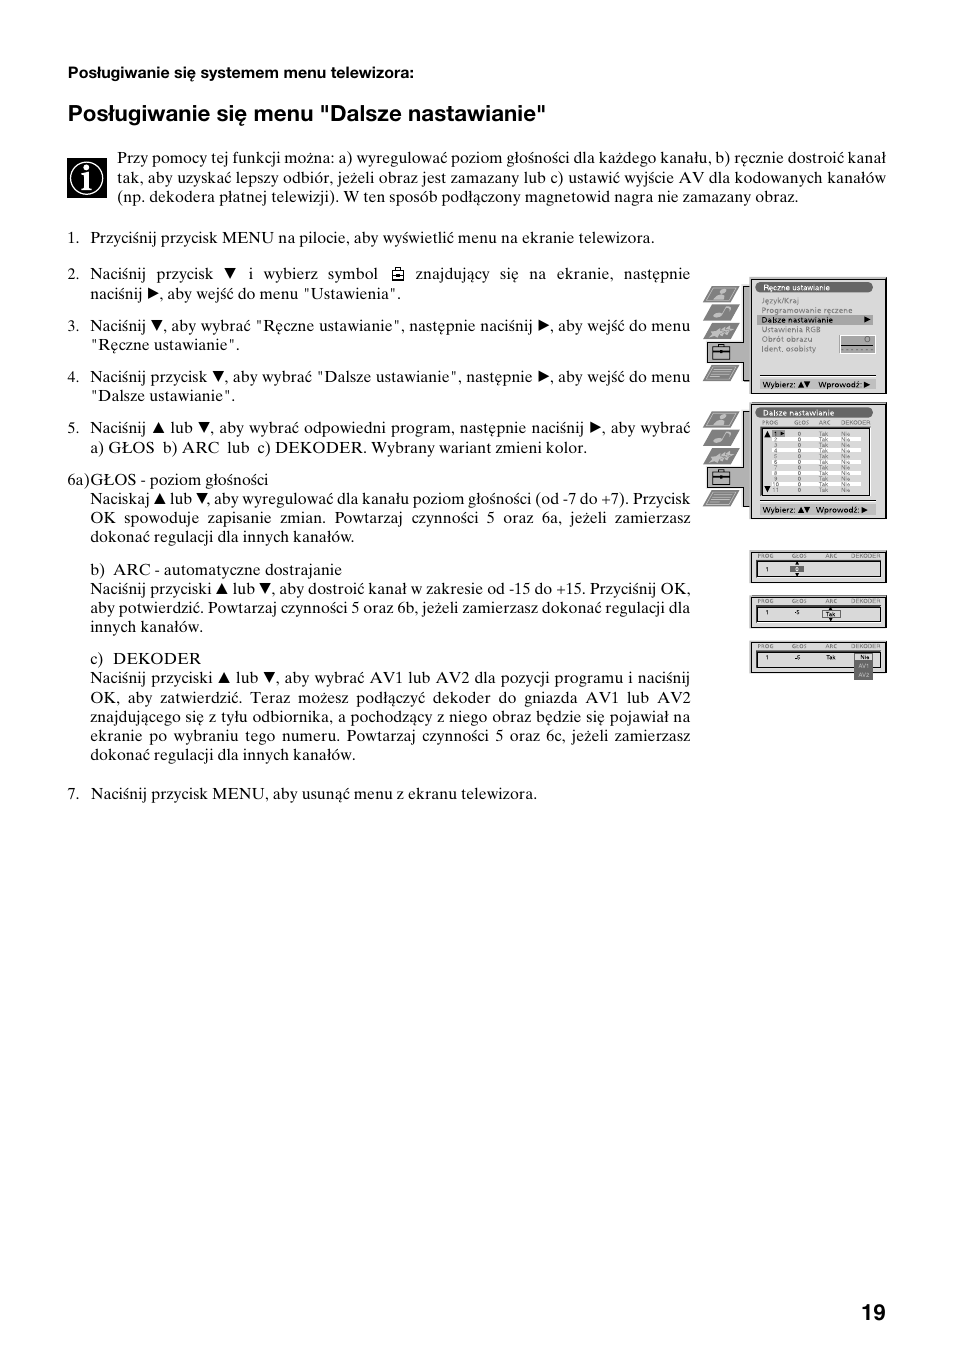 Posługiwanie się menu "dalsze nastawianie | Sony FD Trinitron KV-32FX65 K  User Manual | Page 99 / 108 | Original mode